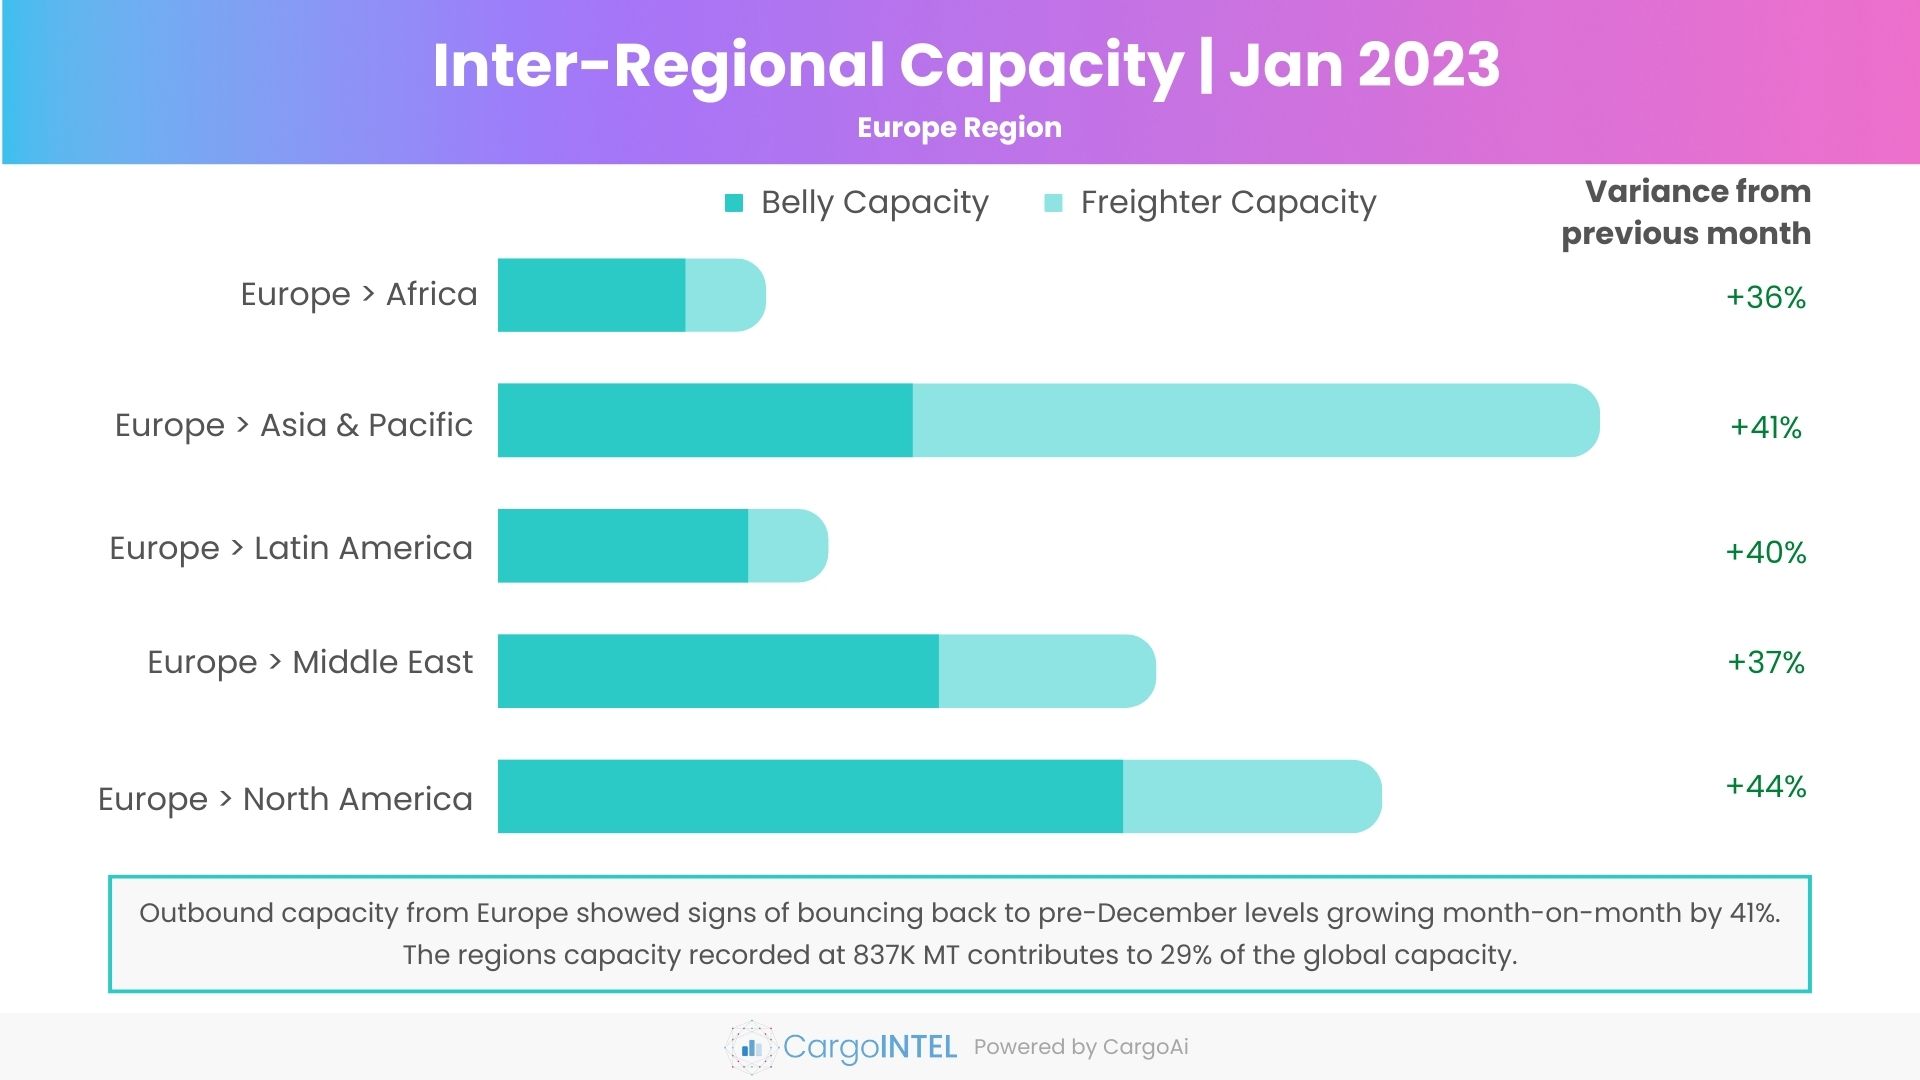 Air cargo capacity of Europe region of Jan 2023